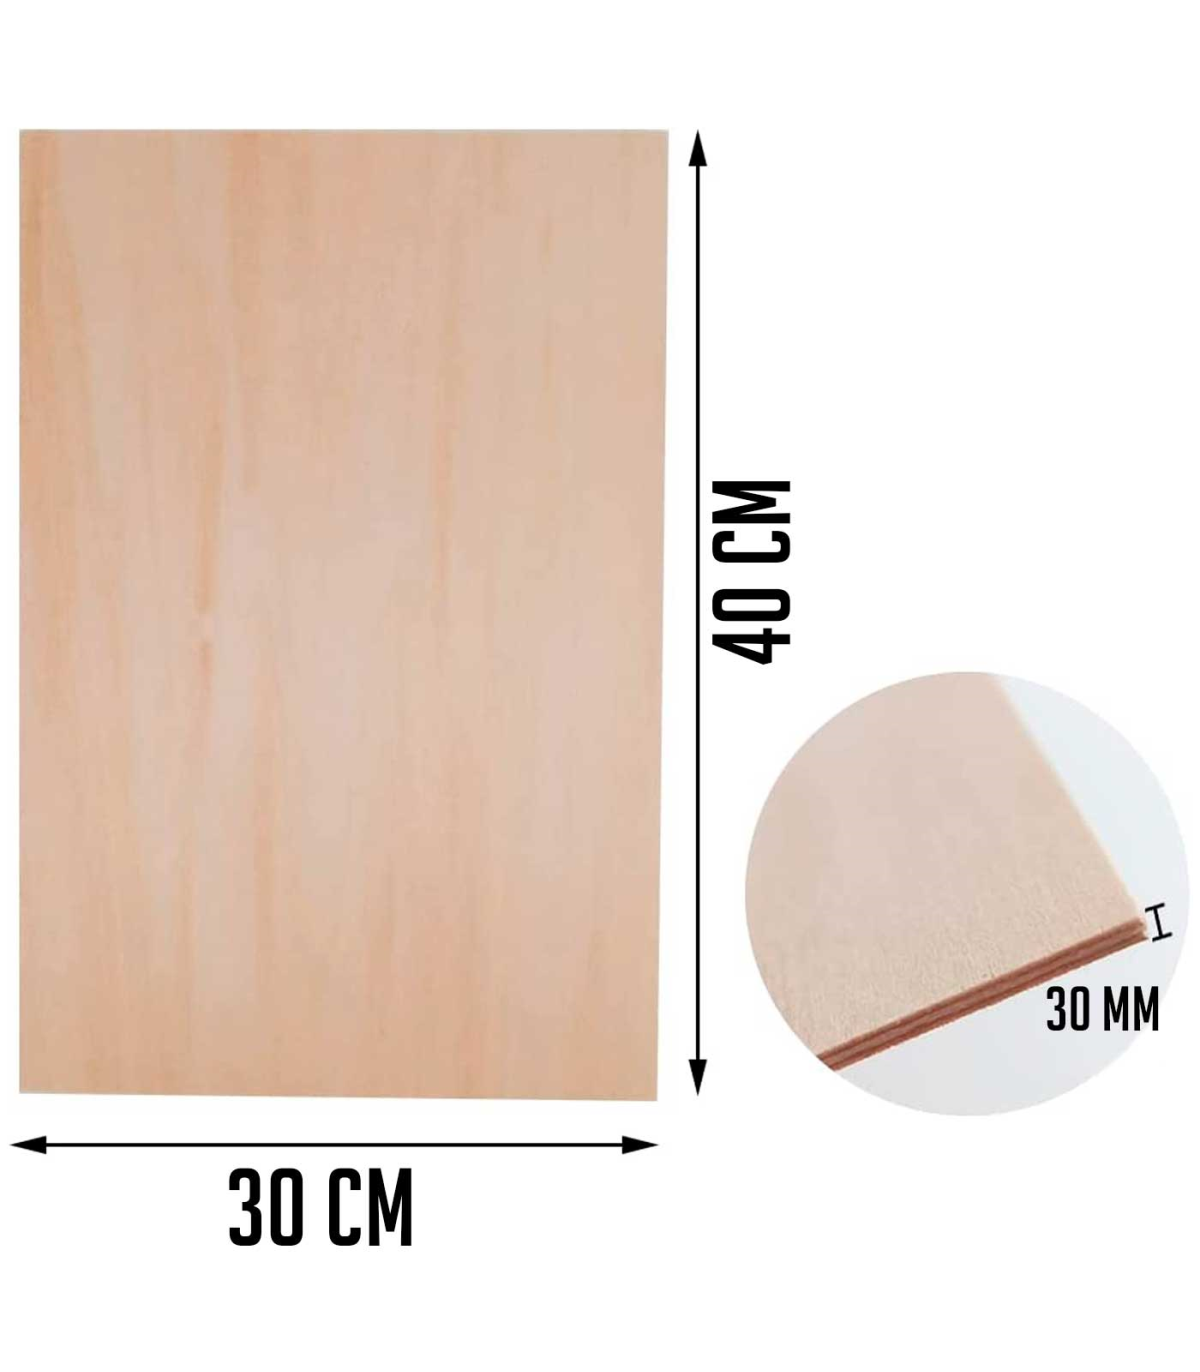 Tradineur - Lámina / Chapa de madera - Fabricado en España - Ideal para  manualidades - Resistente - 40 x 30 x 0,3 cm